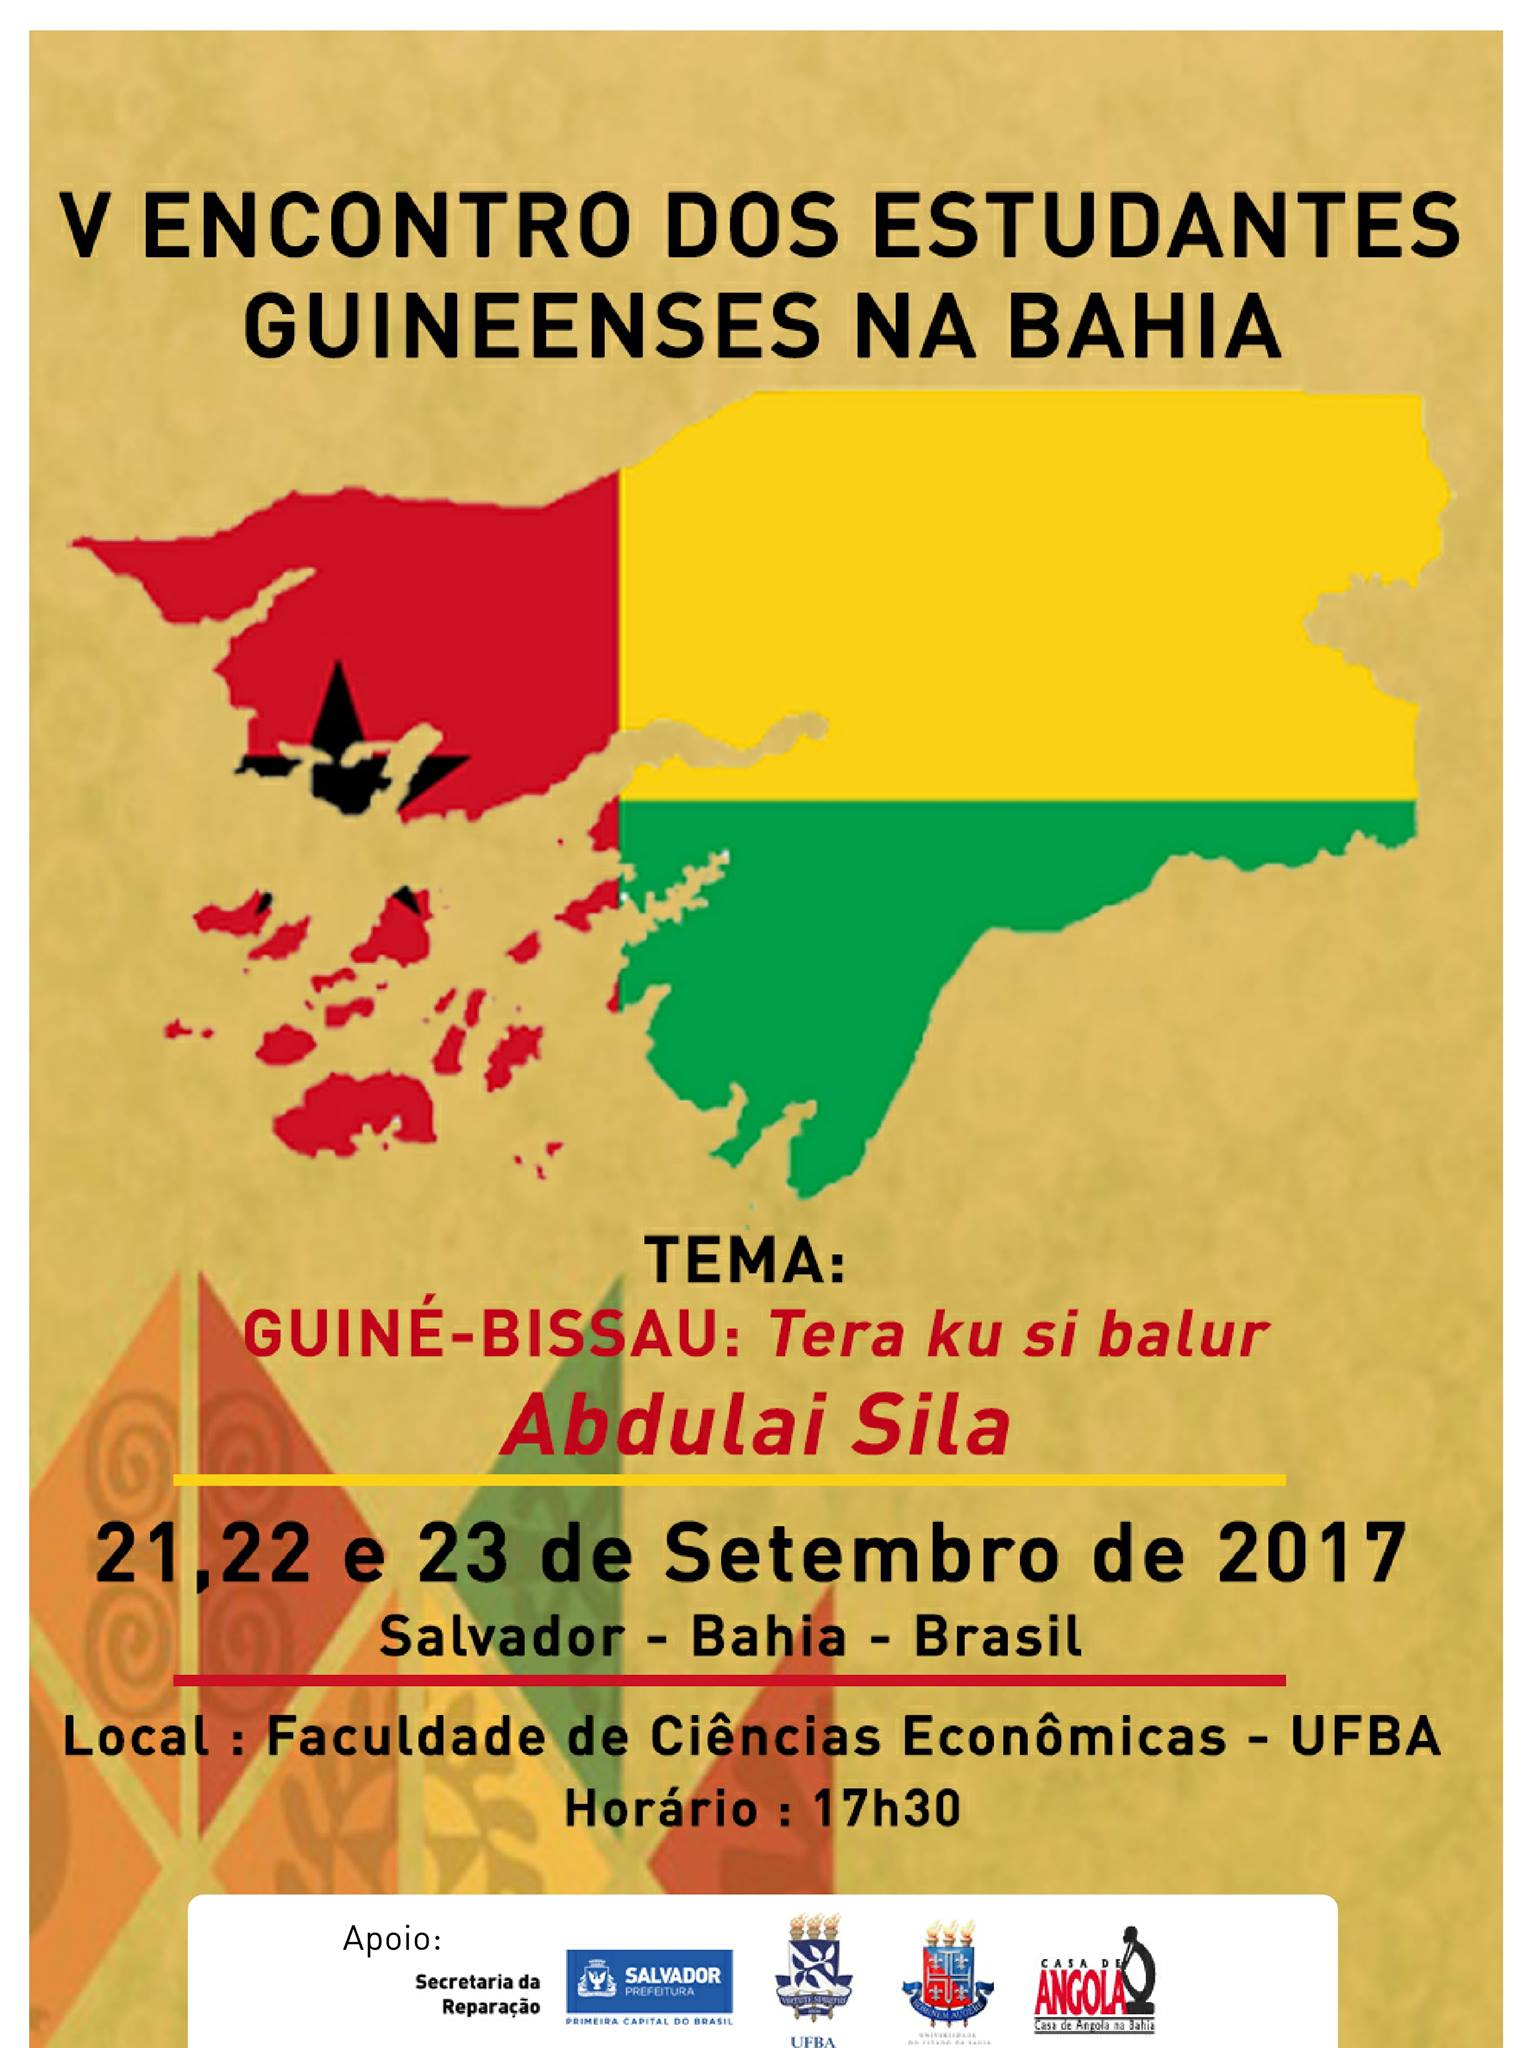 V Encontro dos Estudantes Guineenses na Bahia